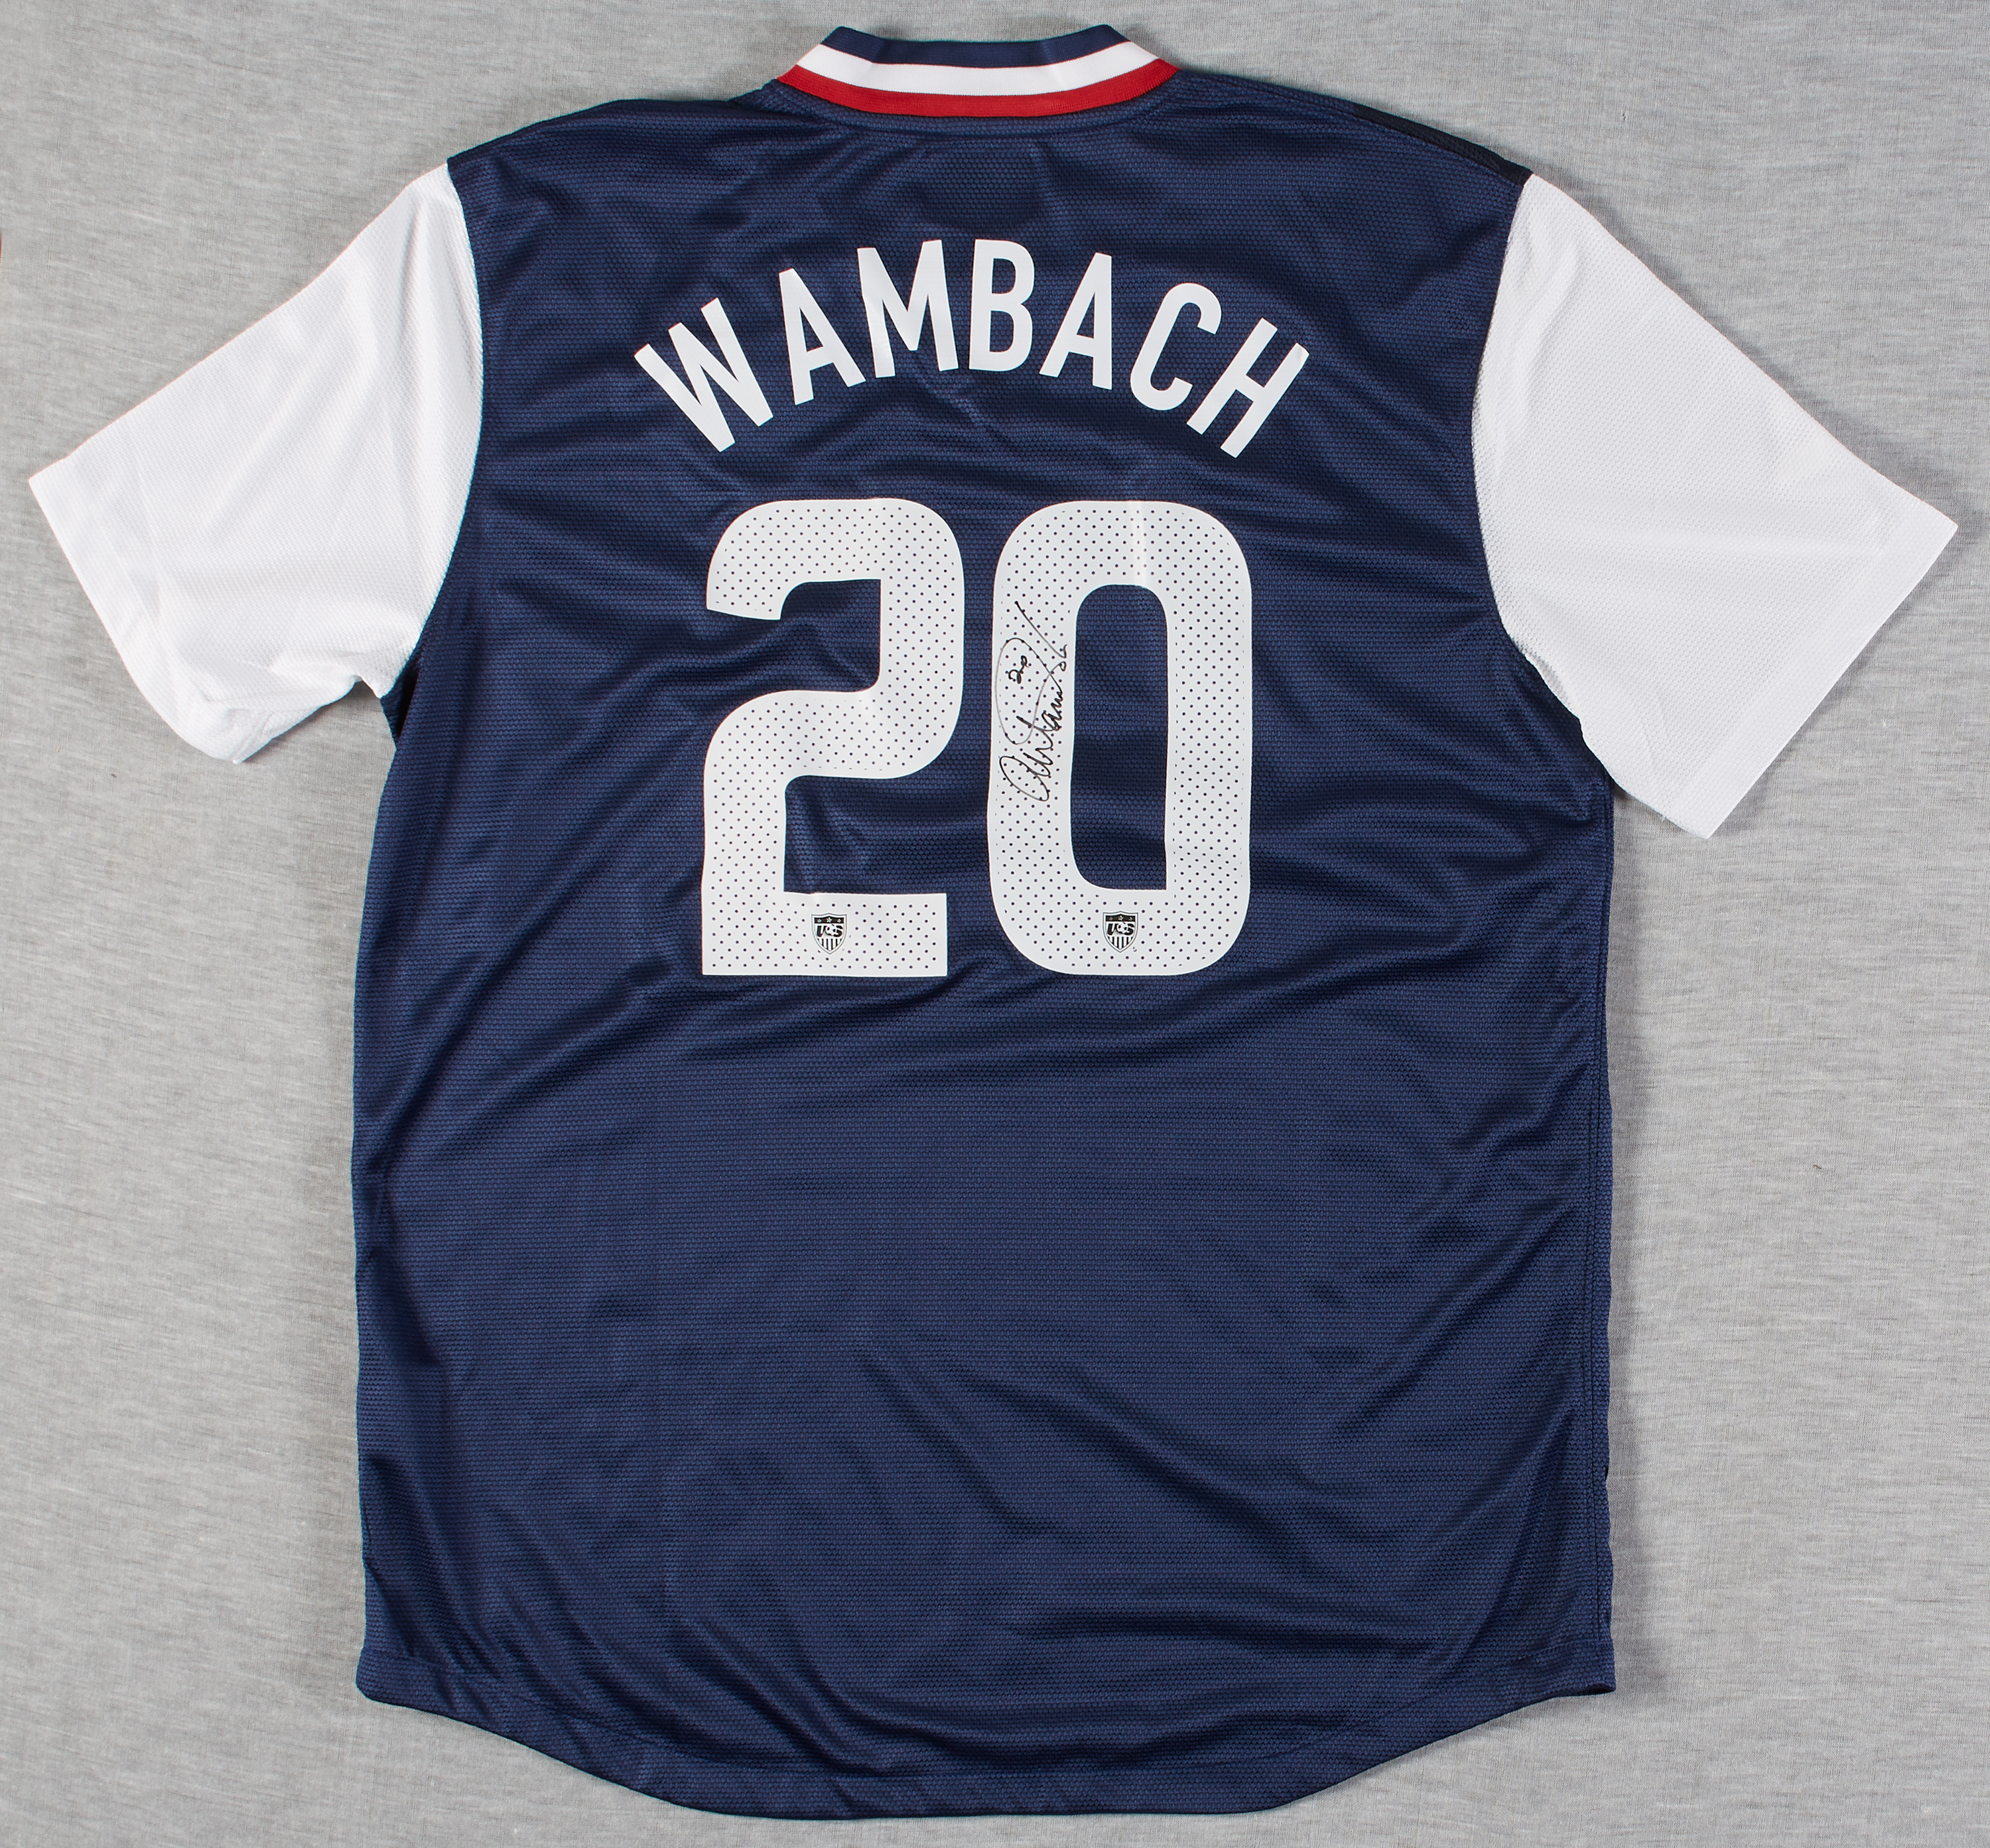 abby wambach signed jersey